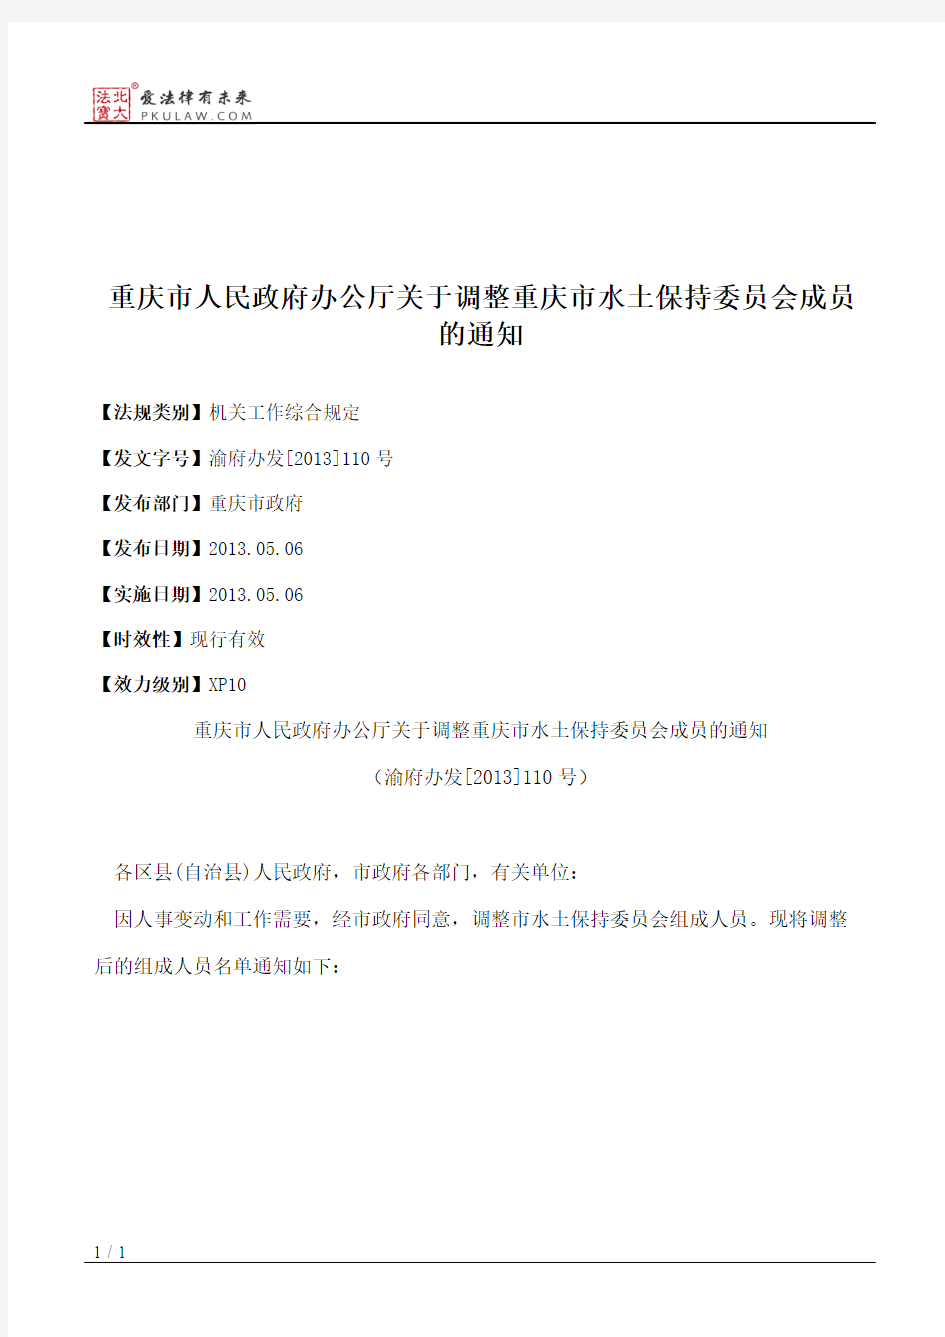 重庆市人民政府办公厅关于调整重庆市水土保持委员会成员的通知